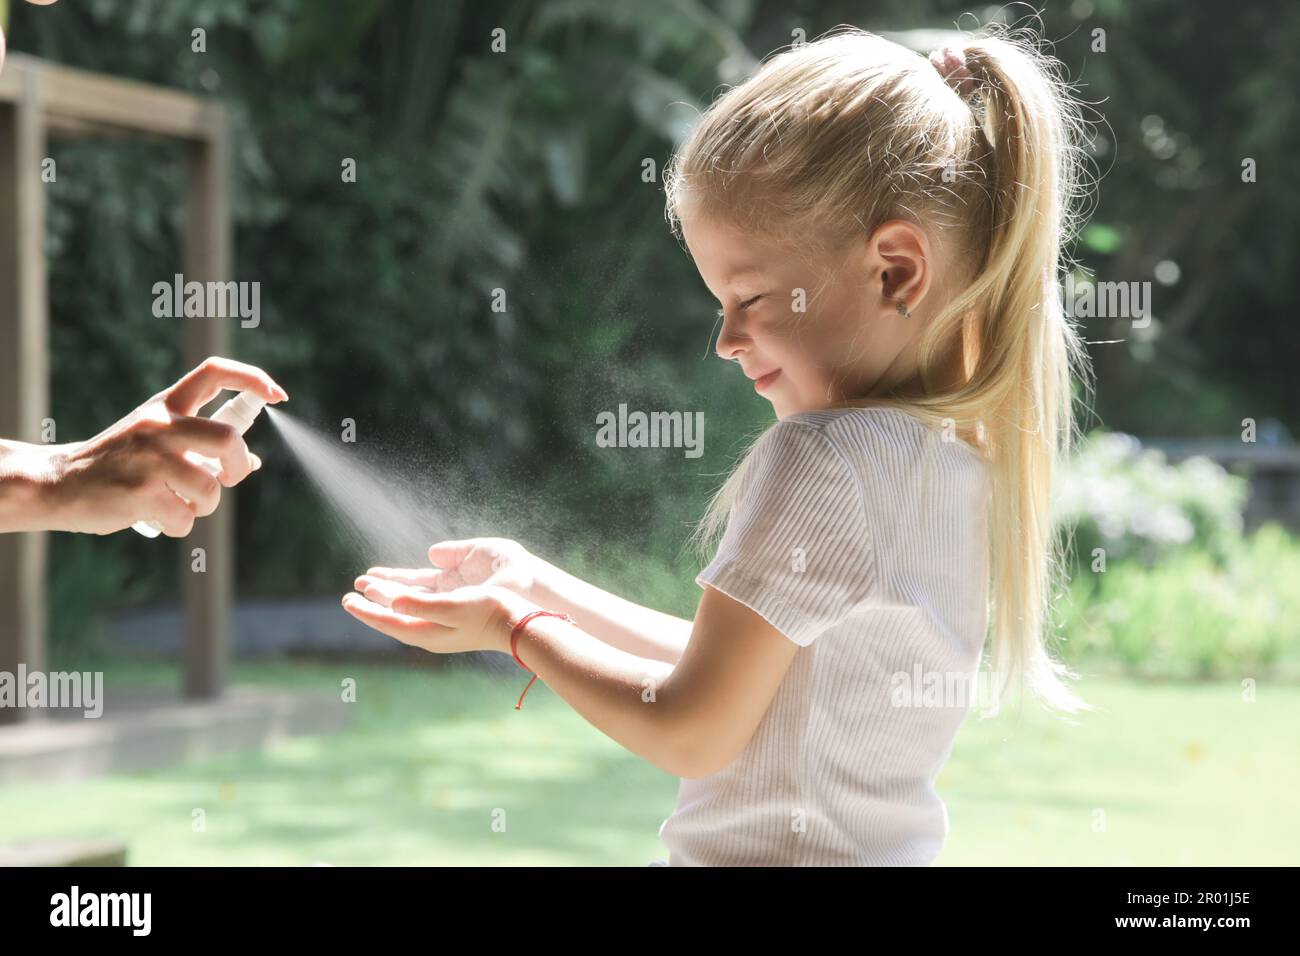 Mère appliquant un désinfectant pour les mains ou un spray répulsif anti-moustiques sur la main de son enfant Banque D'Images